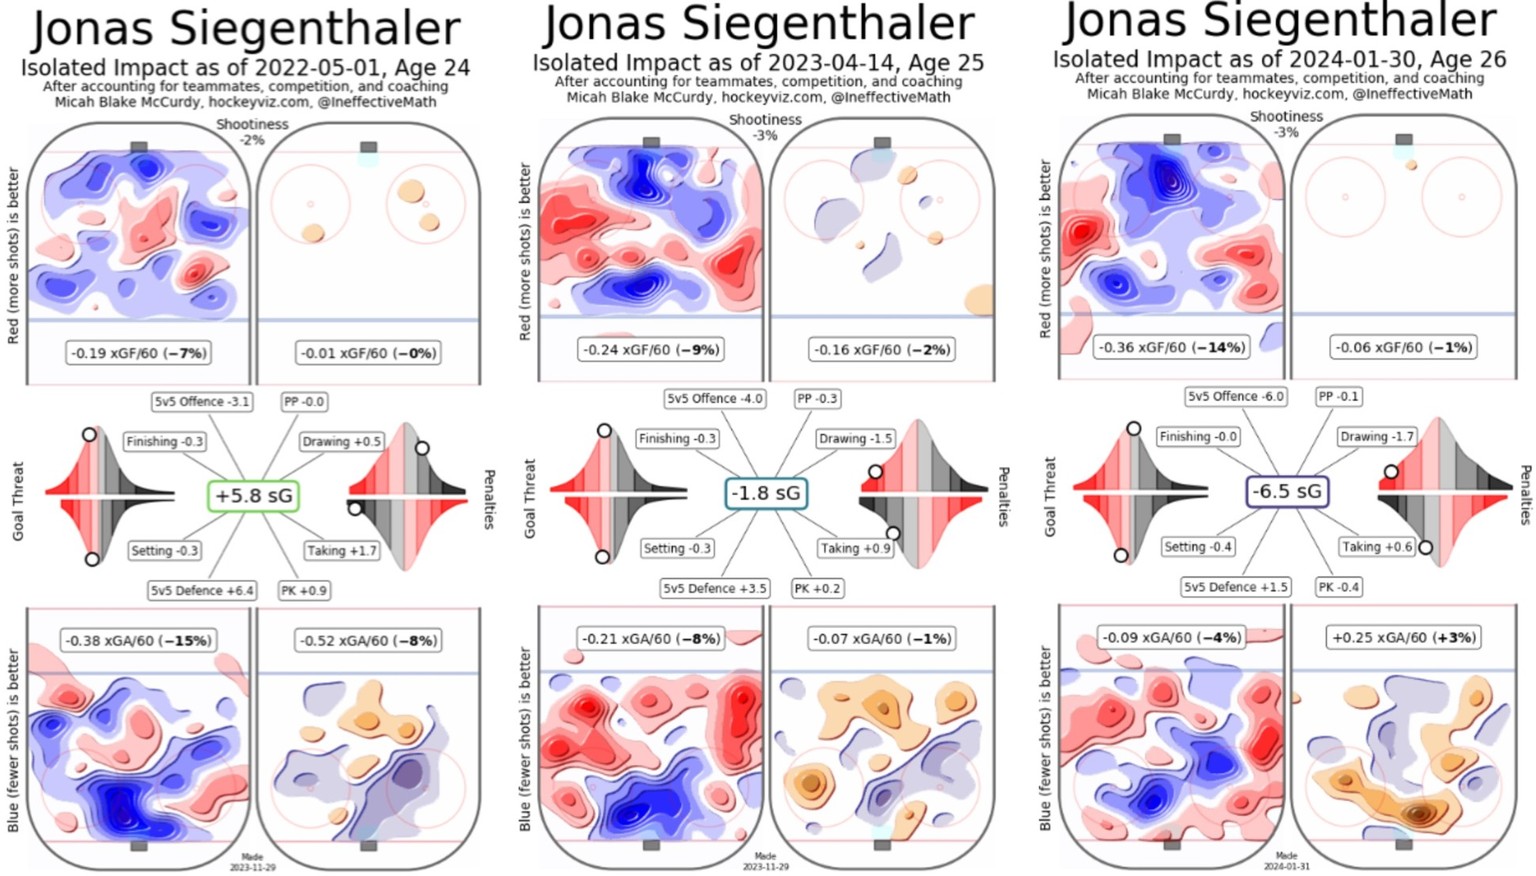 Jonas Siegenthalers Einfluss auf das Spiel in den letzten 3 Saisons.